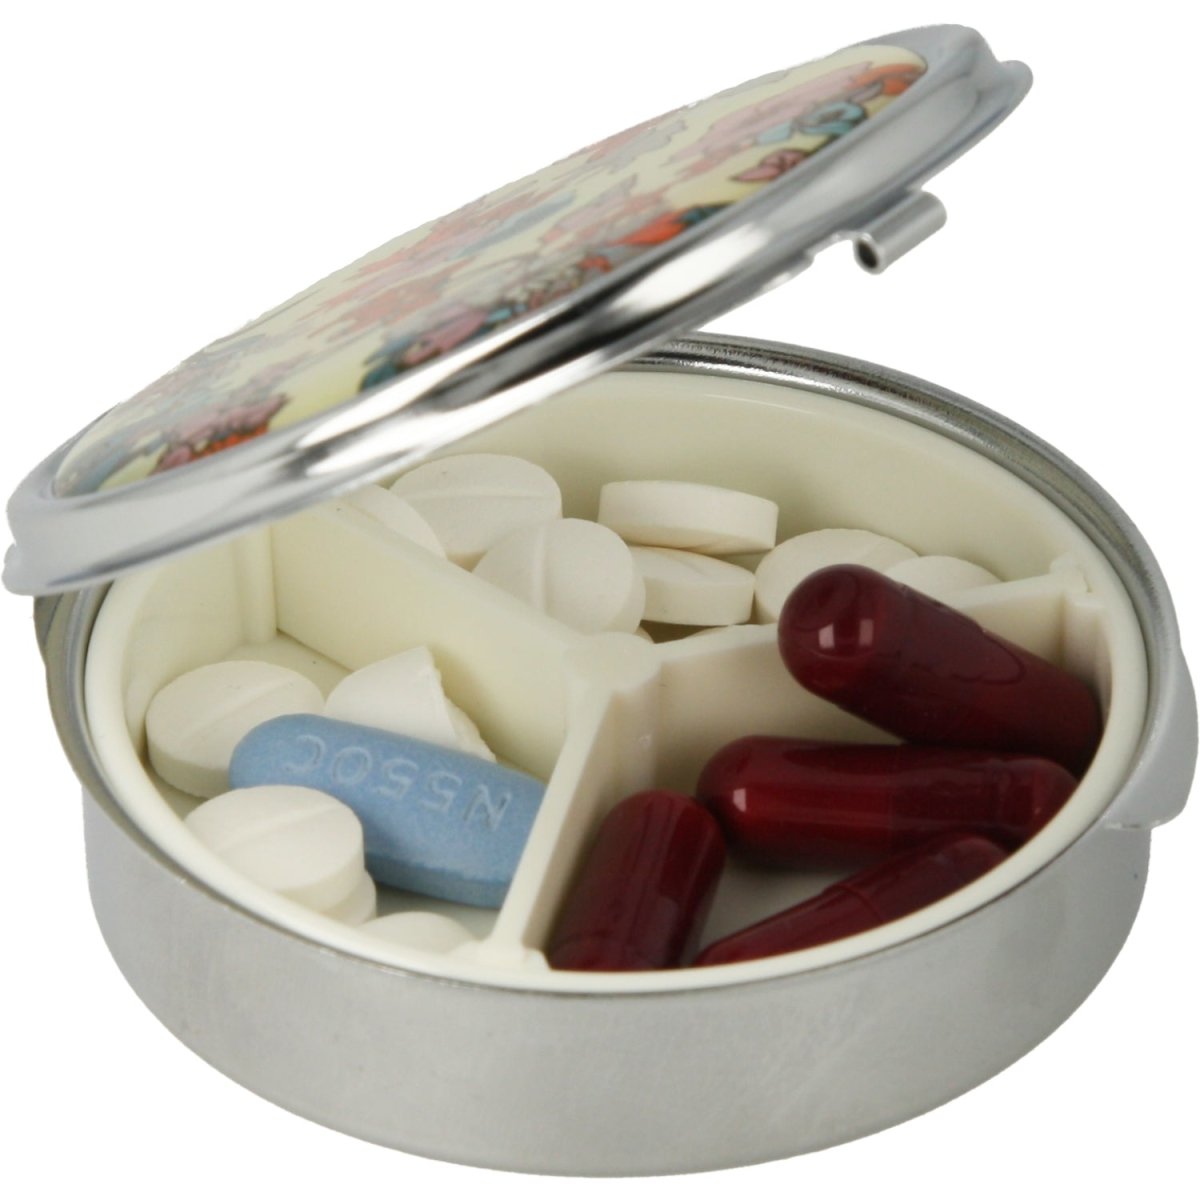 Pastillero pequeño diario bolsillo - 3 compartimentos - Organizador de pastillas pill box estuche redondo - (Amarillo) - movilcom.com